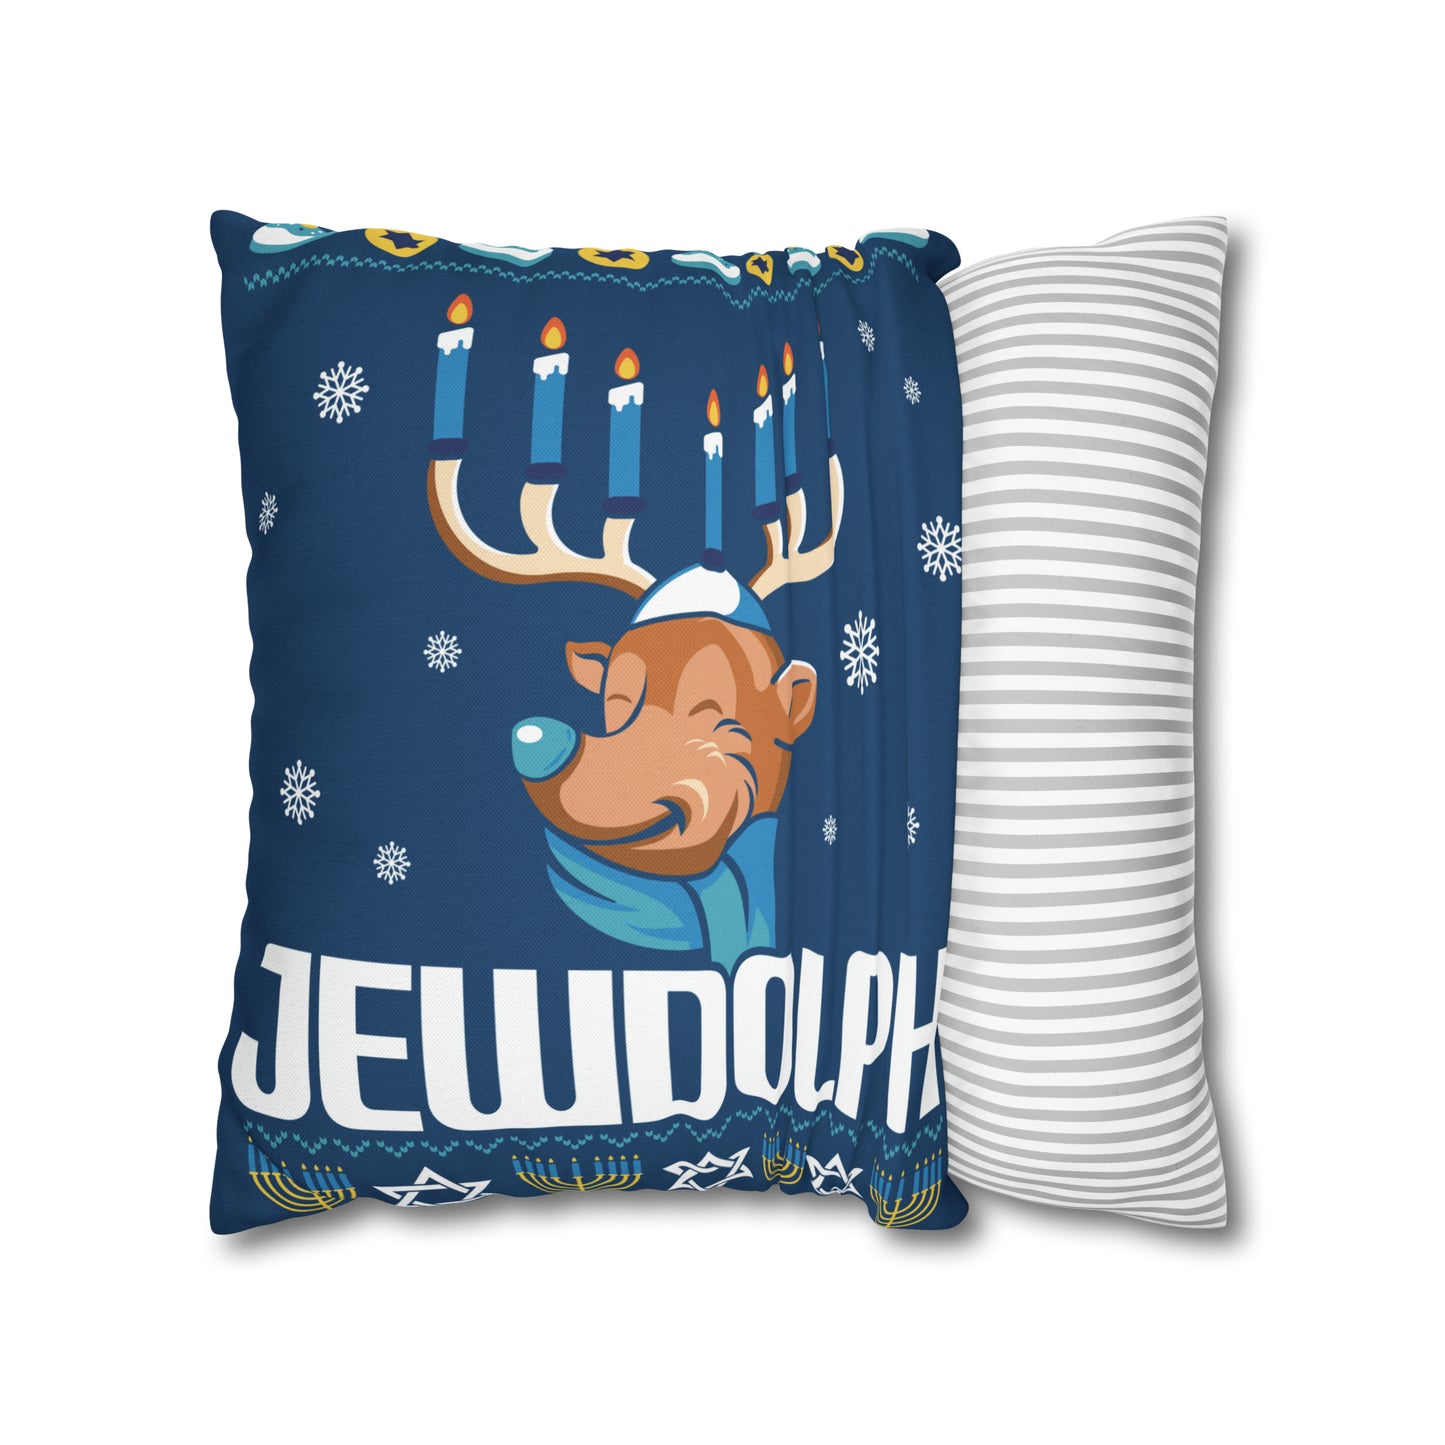 "Jewdolph" Hanukkah Pillow Cover